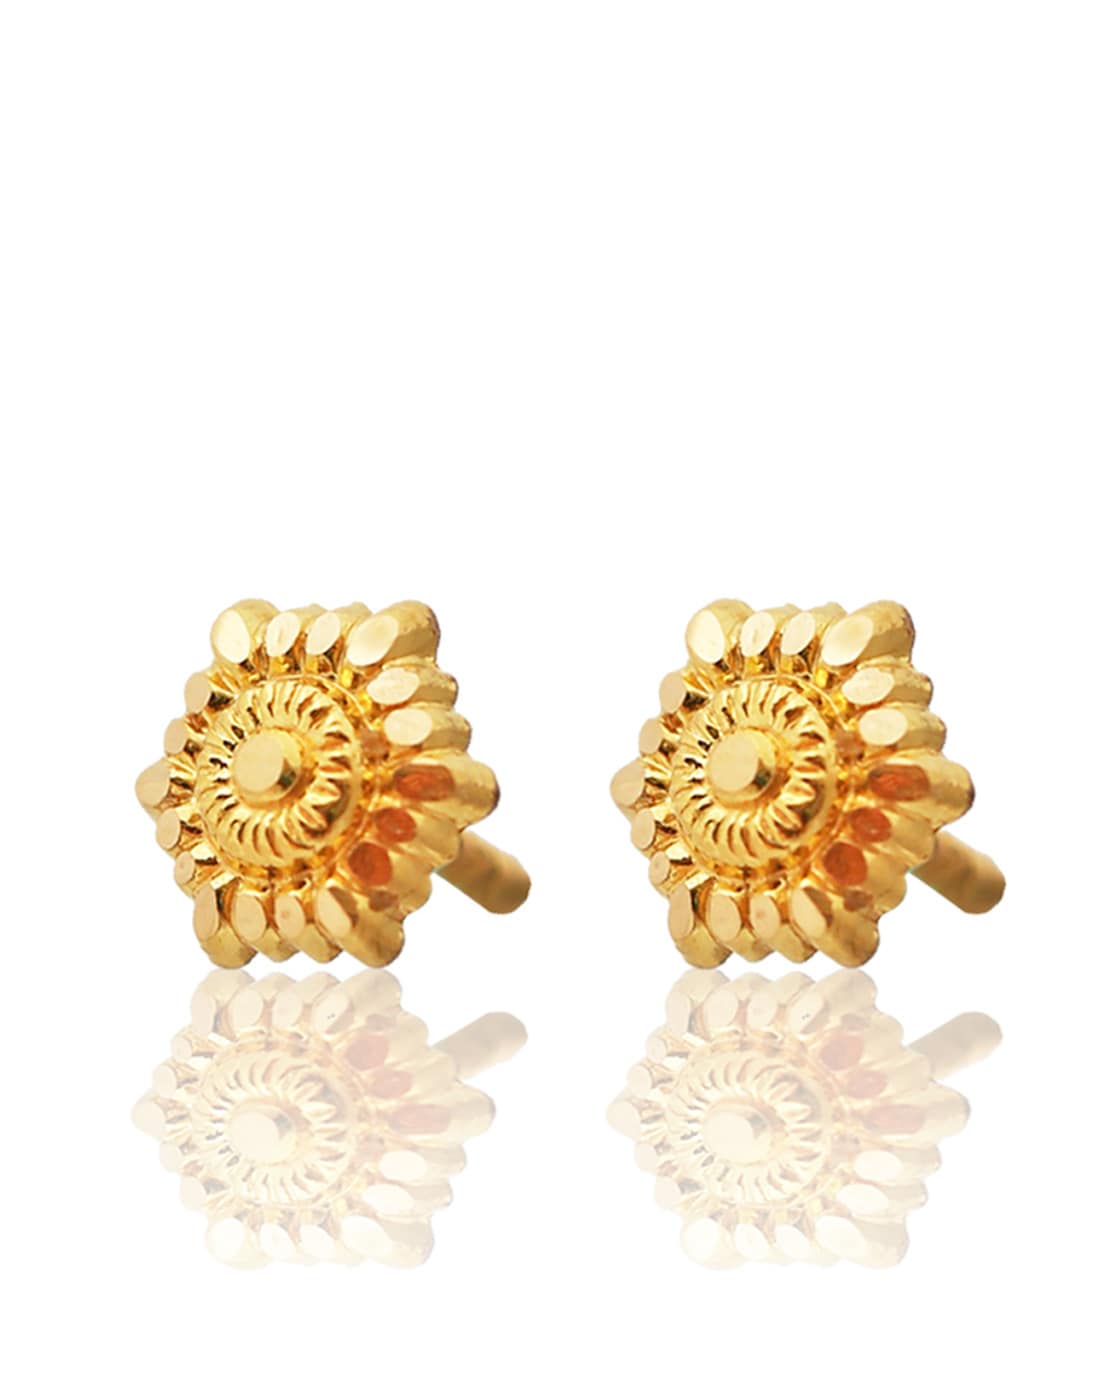 Buy Yellow Gold Earrings for Women by P N Gadgil Jewellers Online ...